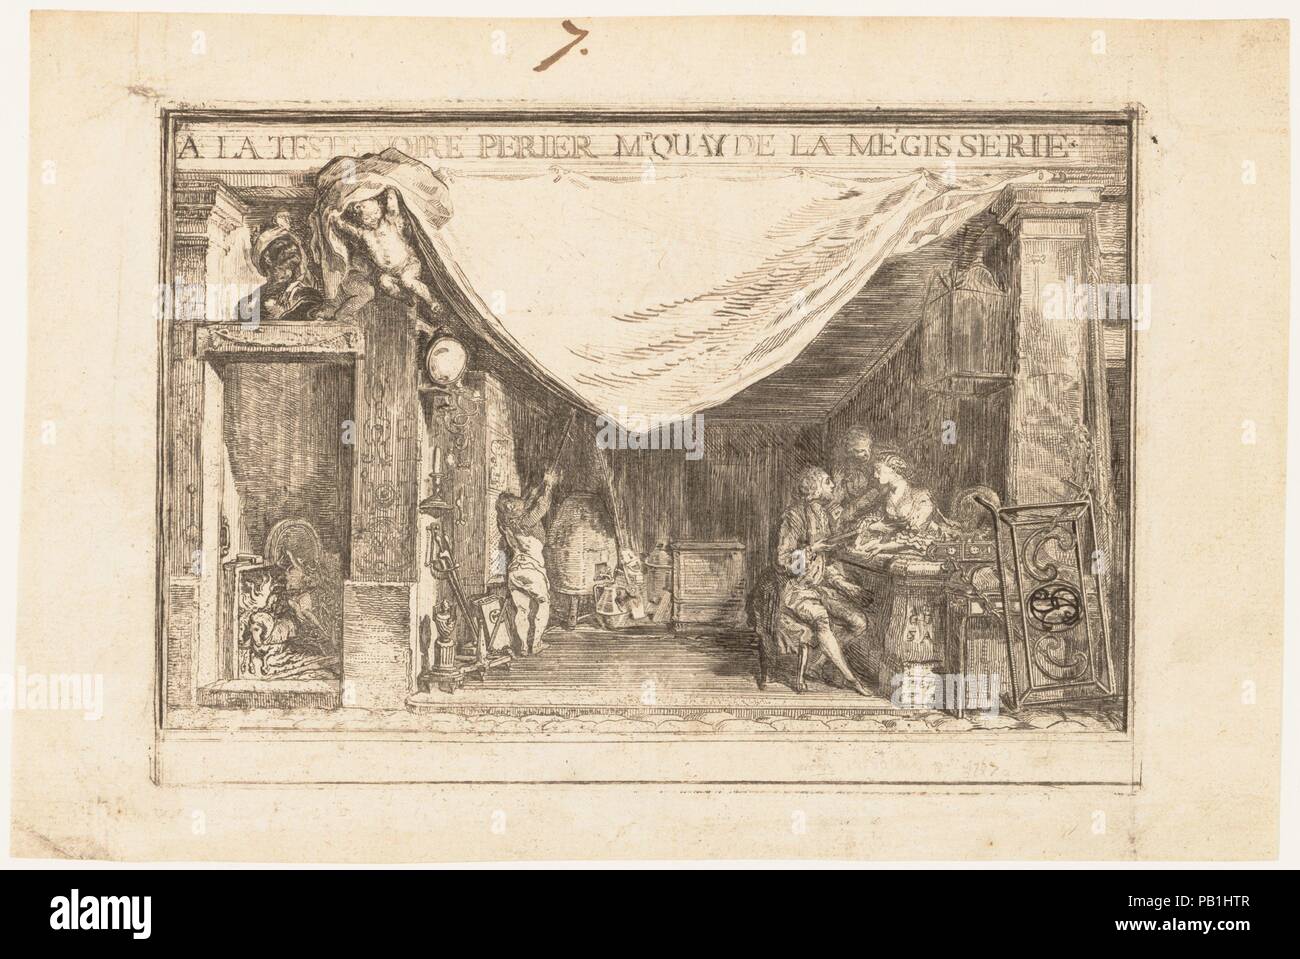 Der Shop von M. Périer, Schmiedearbeiten Kaufmann. Artist: Gabriel de Saint-Aubin (Französisch, Paris 1724-1780 Paris). Maße: Blatt: 6 1/8 x 9 1/4 in. (15,5 x 23,5 cm) Bild: 4 15/16 x 7 1/8 in. (12,5 x 18,1 cm). Datum: 1767. Dieses Design für eine Visitenkarte oder eine Ansage zeigt ein eisenhändler Shop, als ob der Fassade entfernt wurden, präsentiert das Interieur einen theatralischen Tableau. In einer Einstellung mit waren vollgestopft, ein männlicher Kunde bespricht die Verdienste eines Schlosses mit einem weiblichen Mitarbeiter. Dieser Eindruck ist eine frühe, unfertigen Zustand, auf dem die Künstlerin bestimmte Zusätze in Feder und Tinte zu Wh angeben Stockfoto